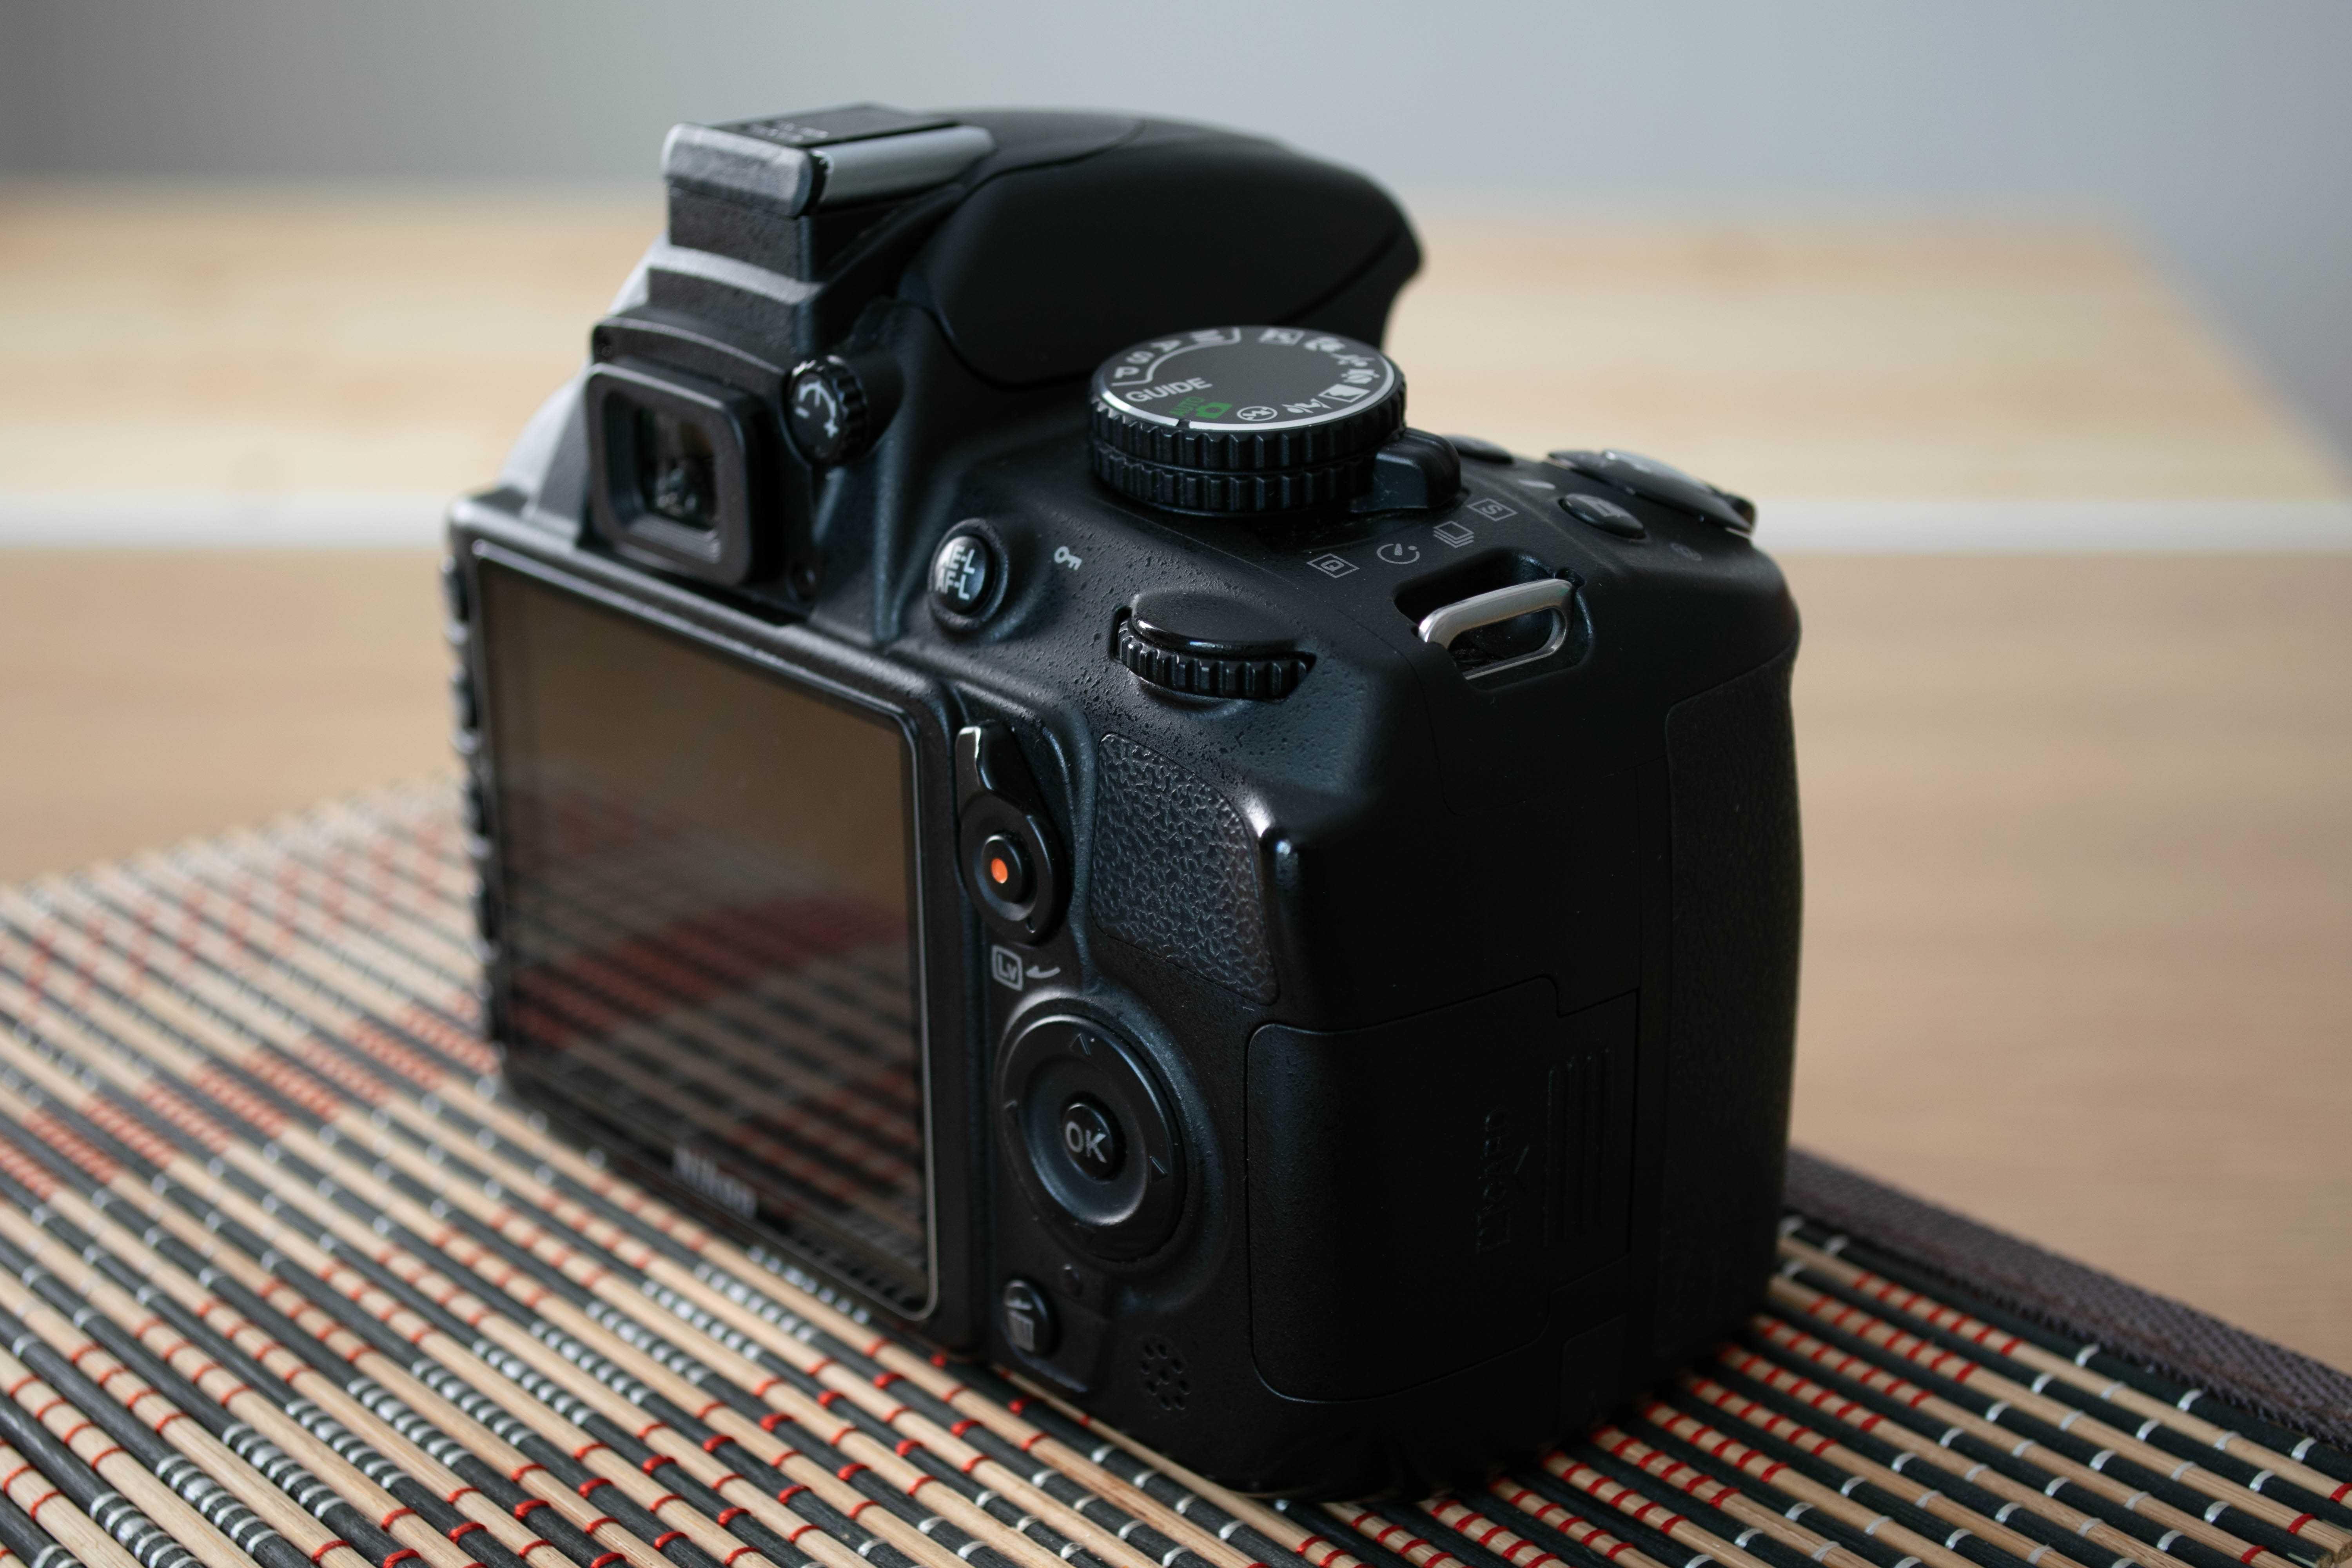 Lustrzanka Nikon D3100,  bardzo mały przebieg 3254 zdjęć